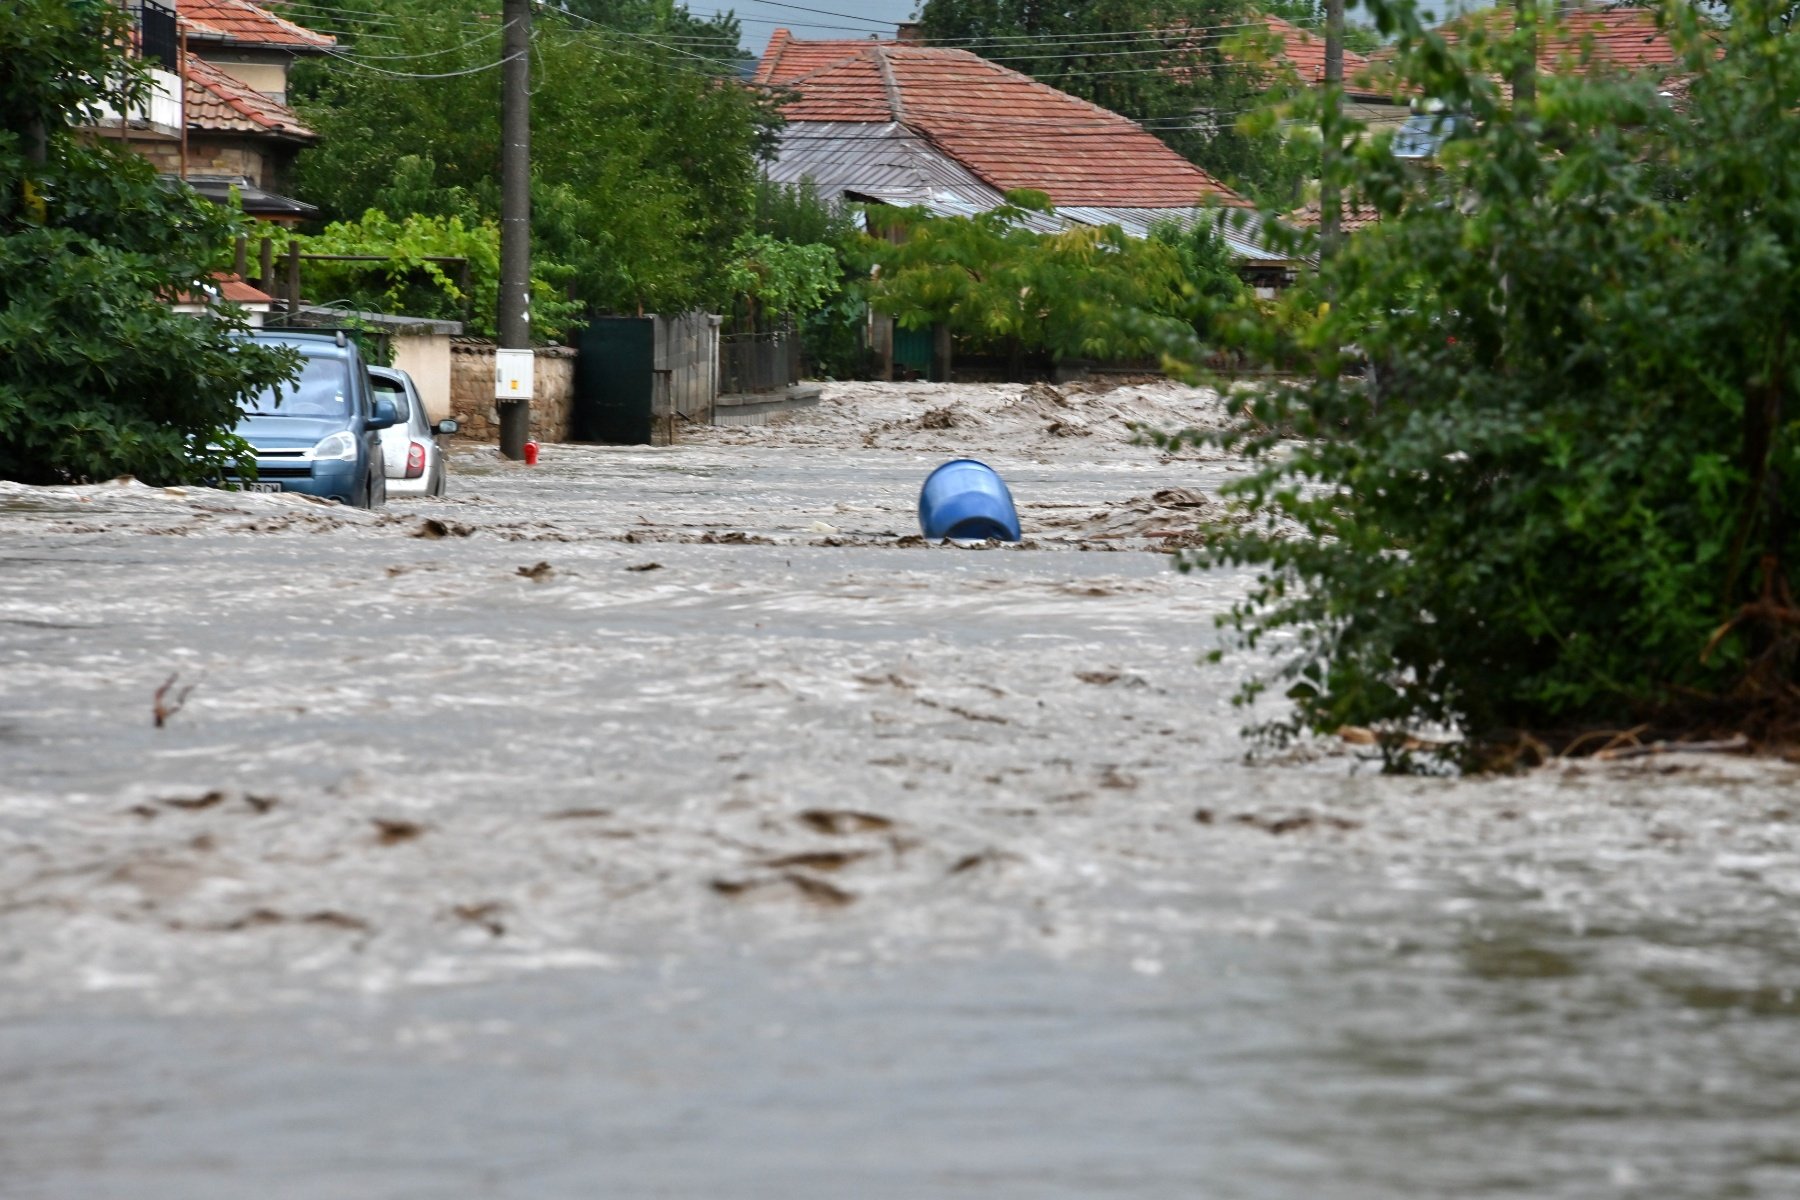 Втора приливна вълна заля около 11,30 часа село Каравелово, което е едно от пострадалите от наводненията в Карловско села